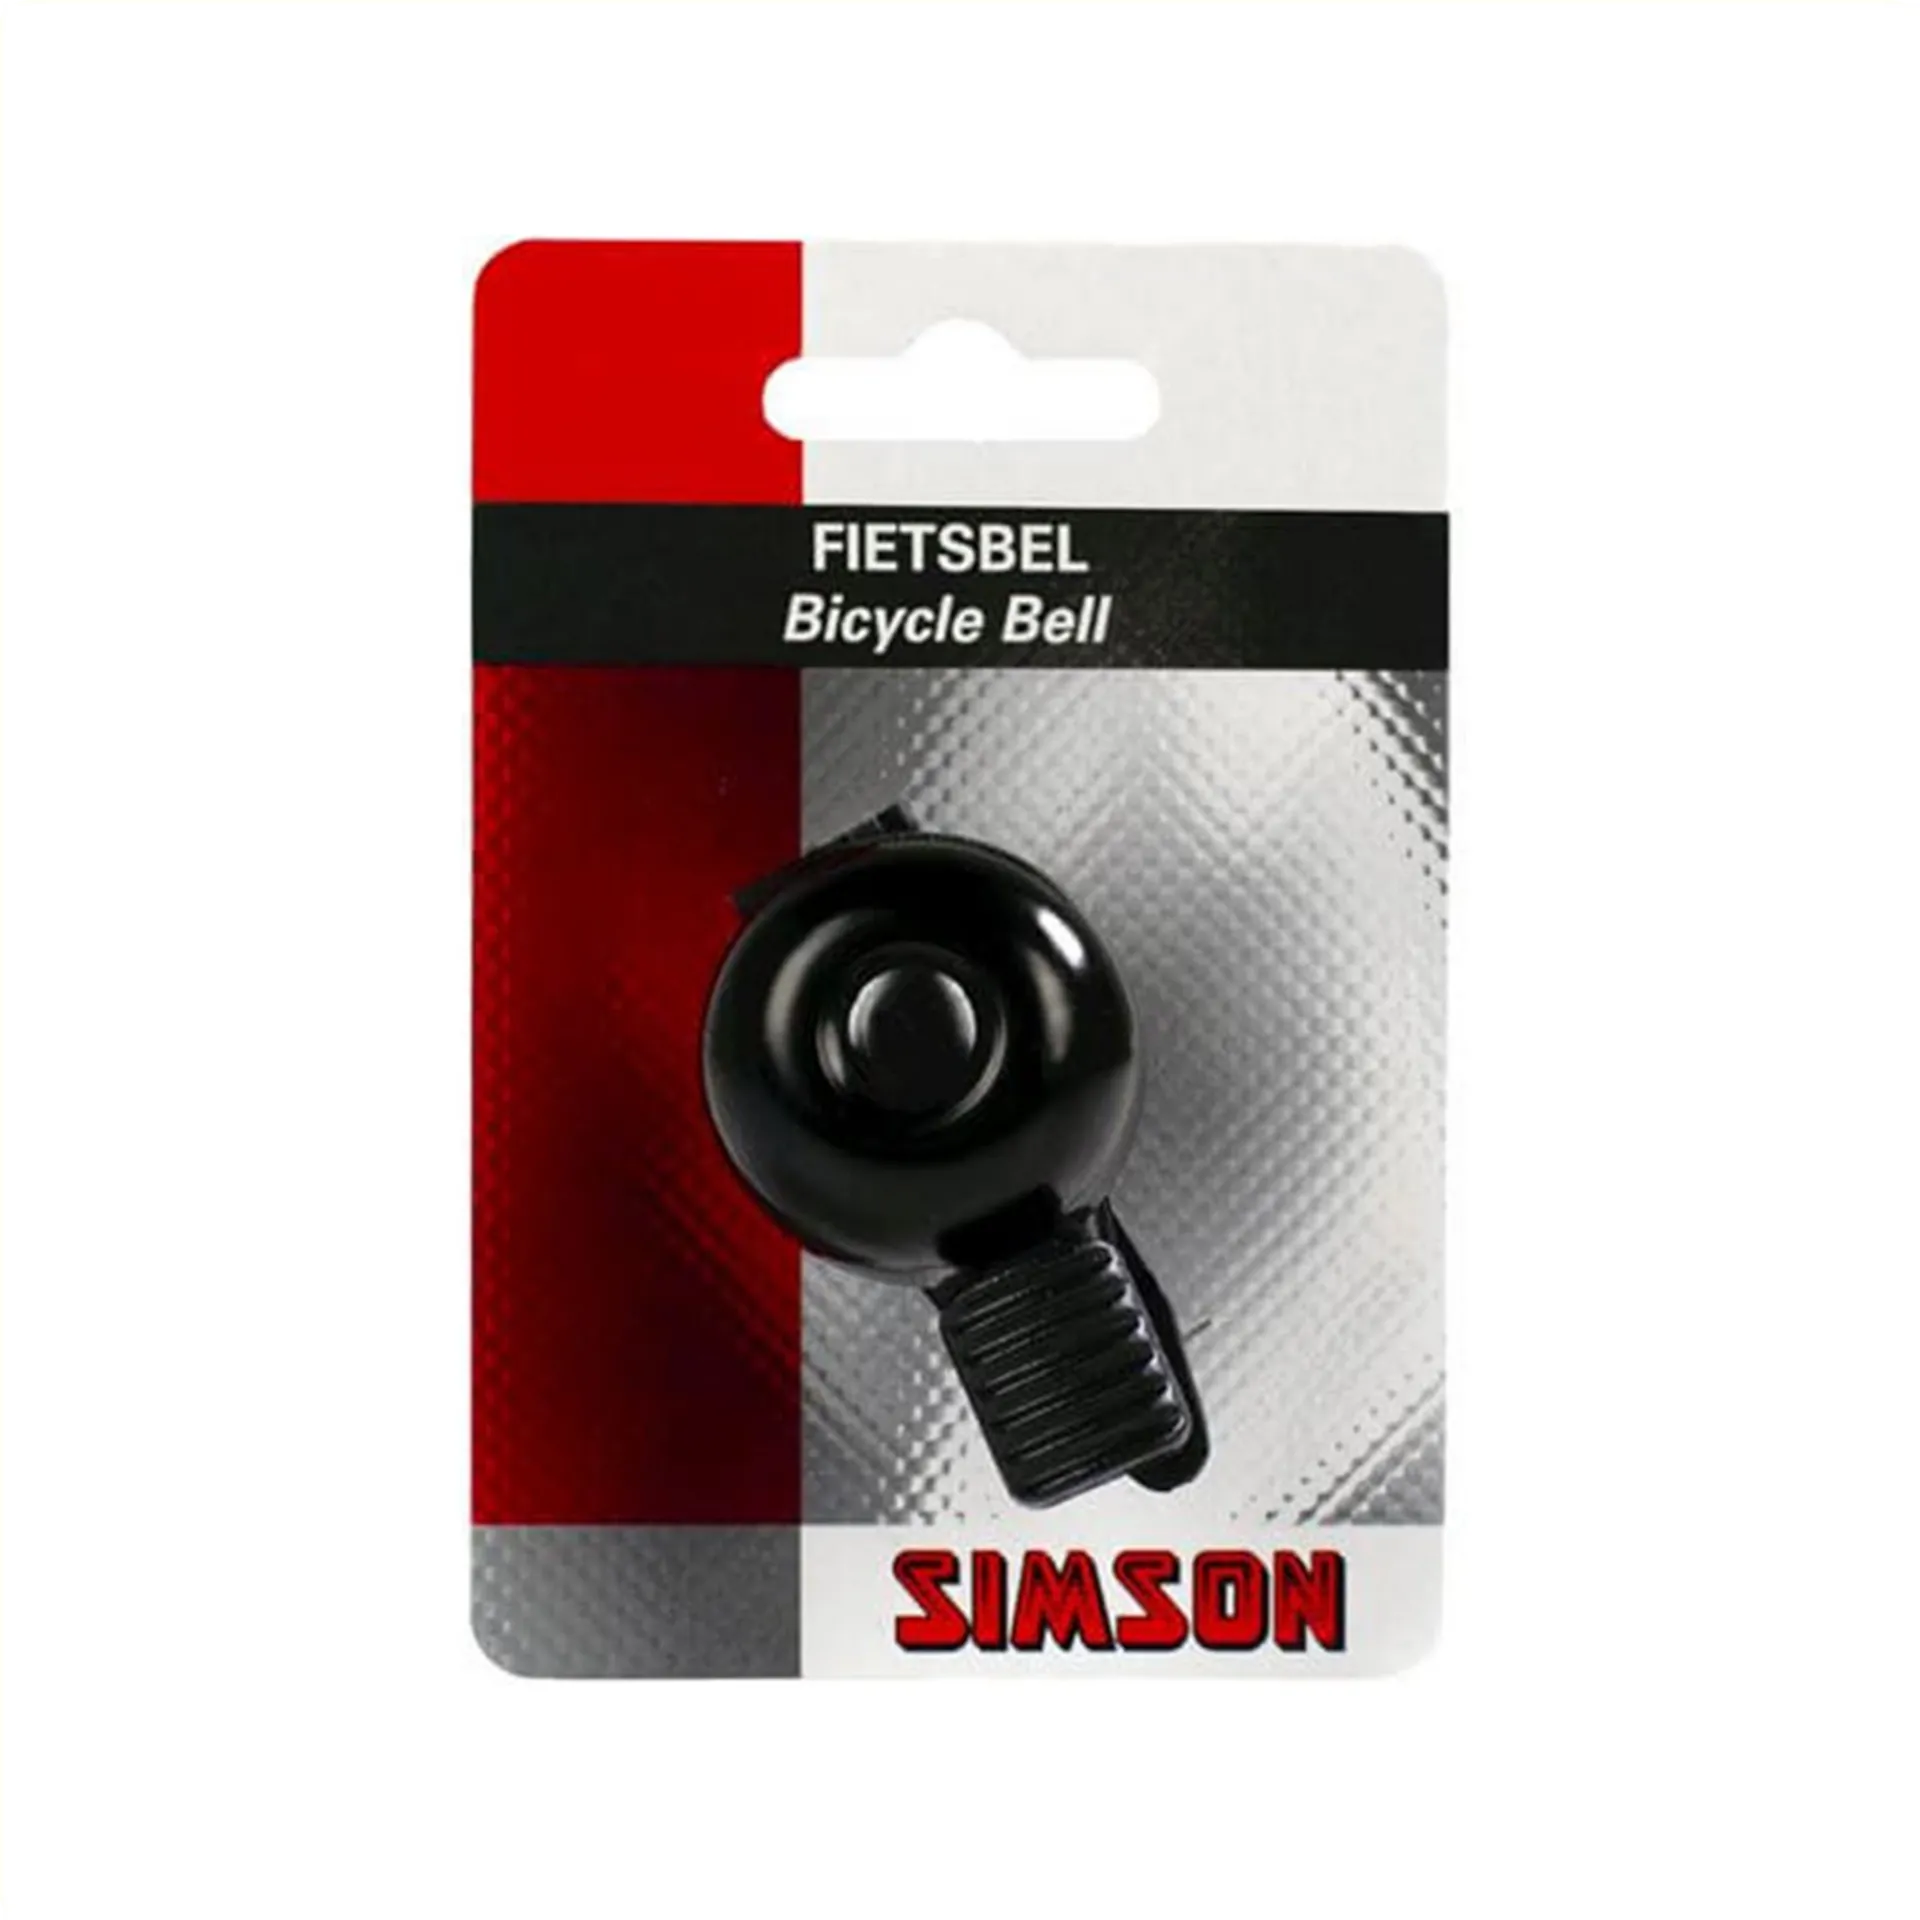 fiets bel - Simson mini 32mm met flex-band bevestiging - zwart